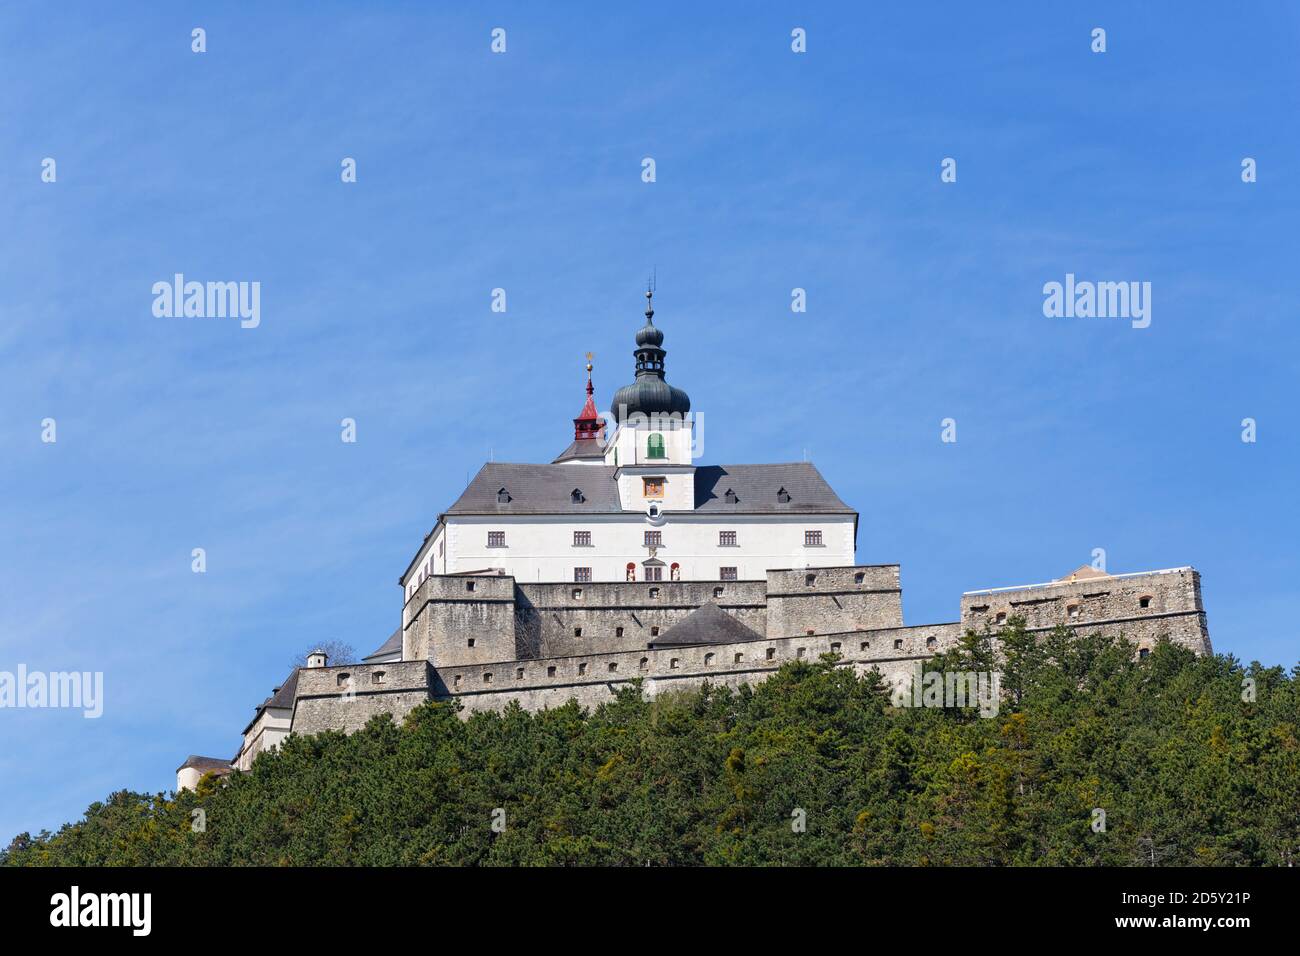 Austria, Burgenland, Forchtenstein Castle Stock Photo